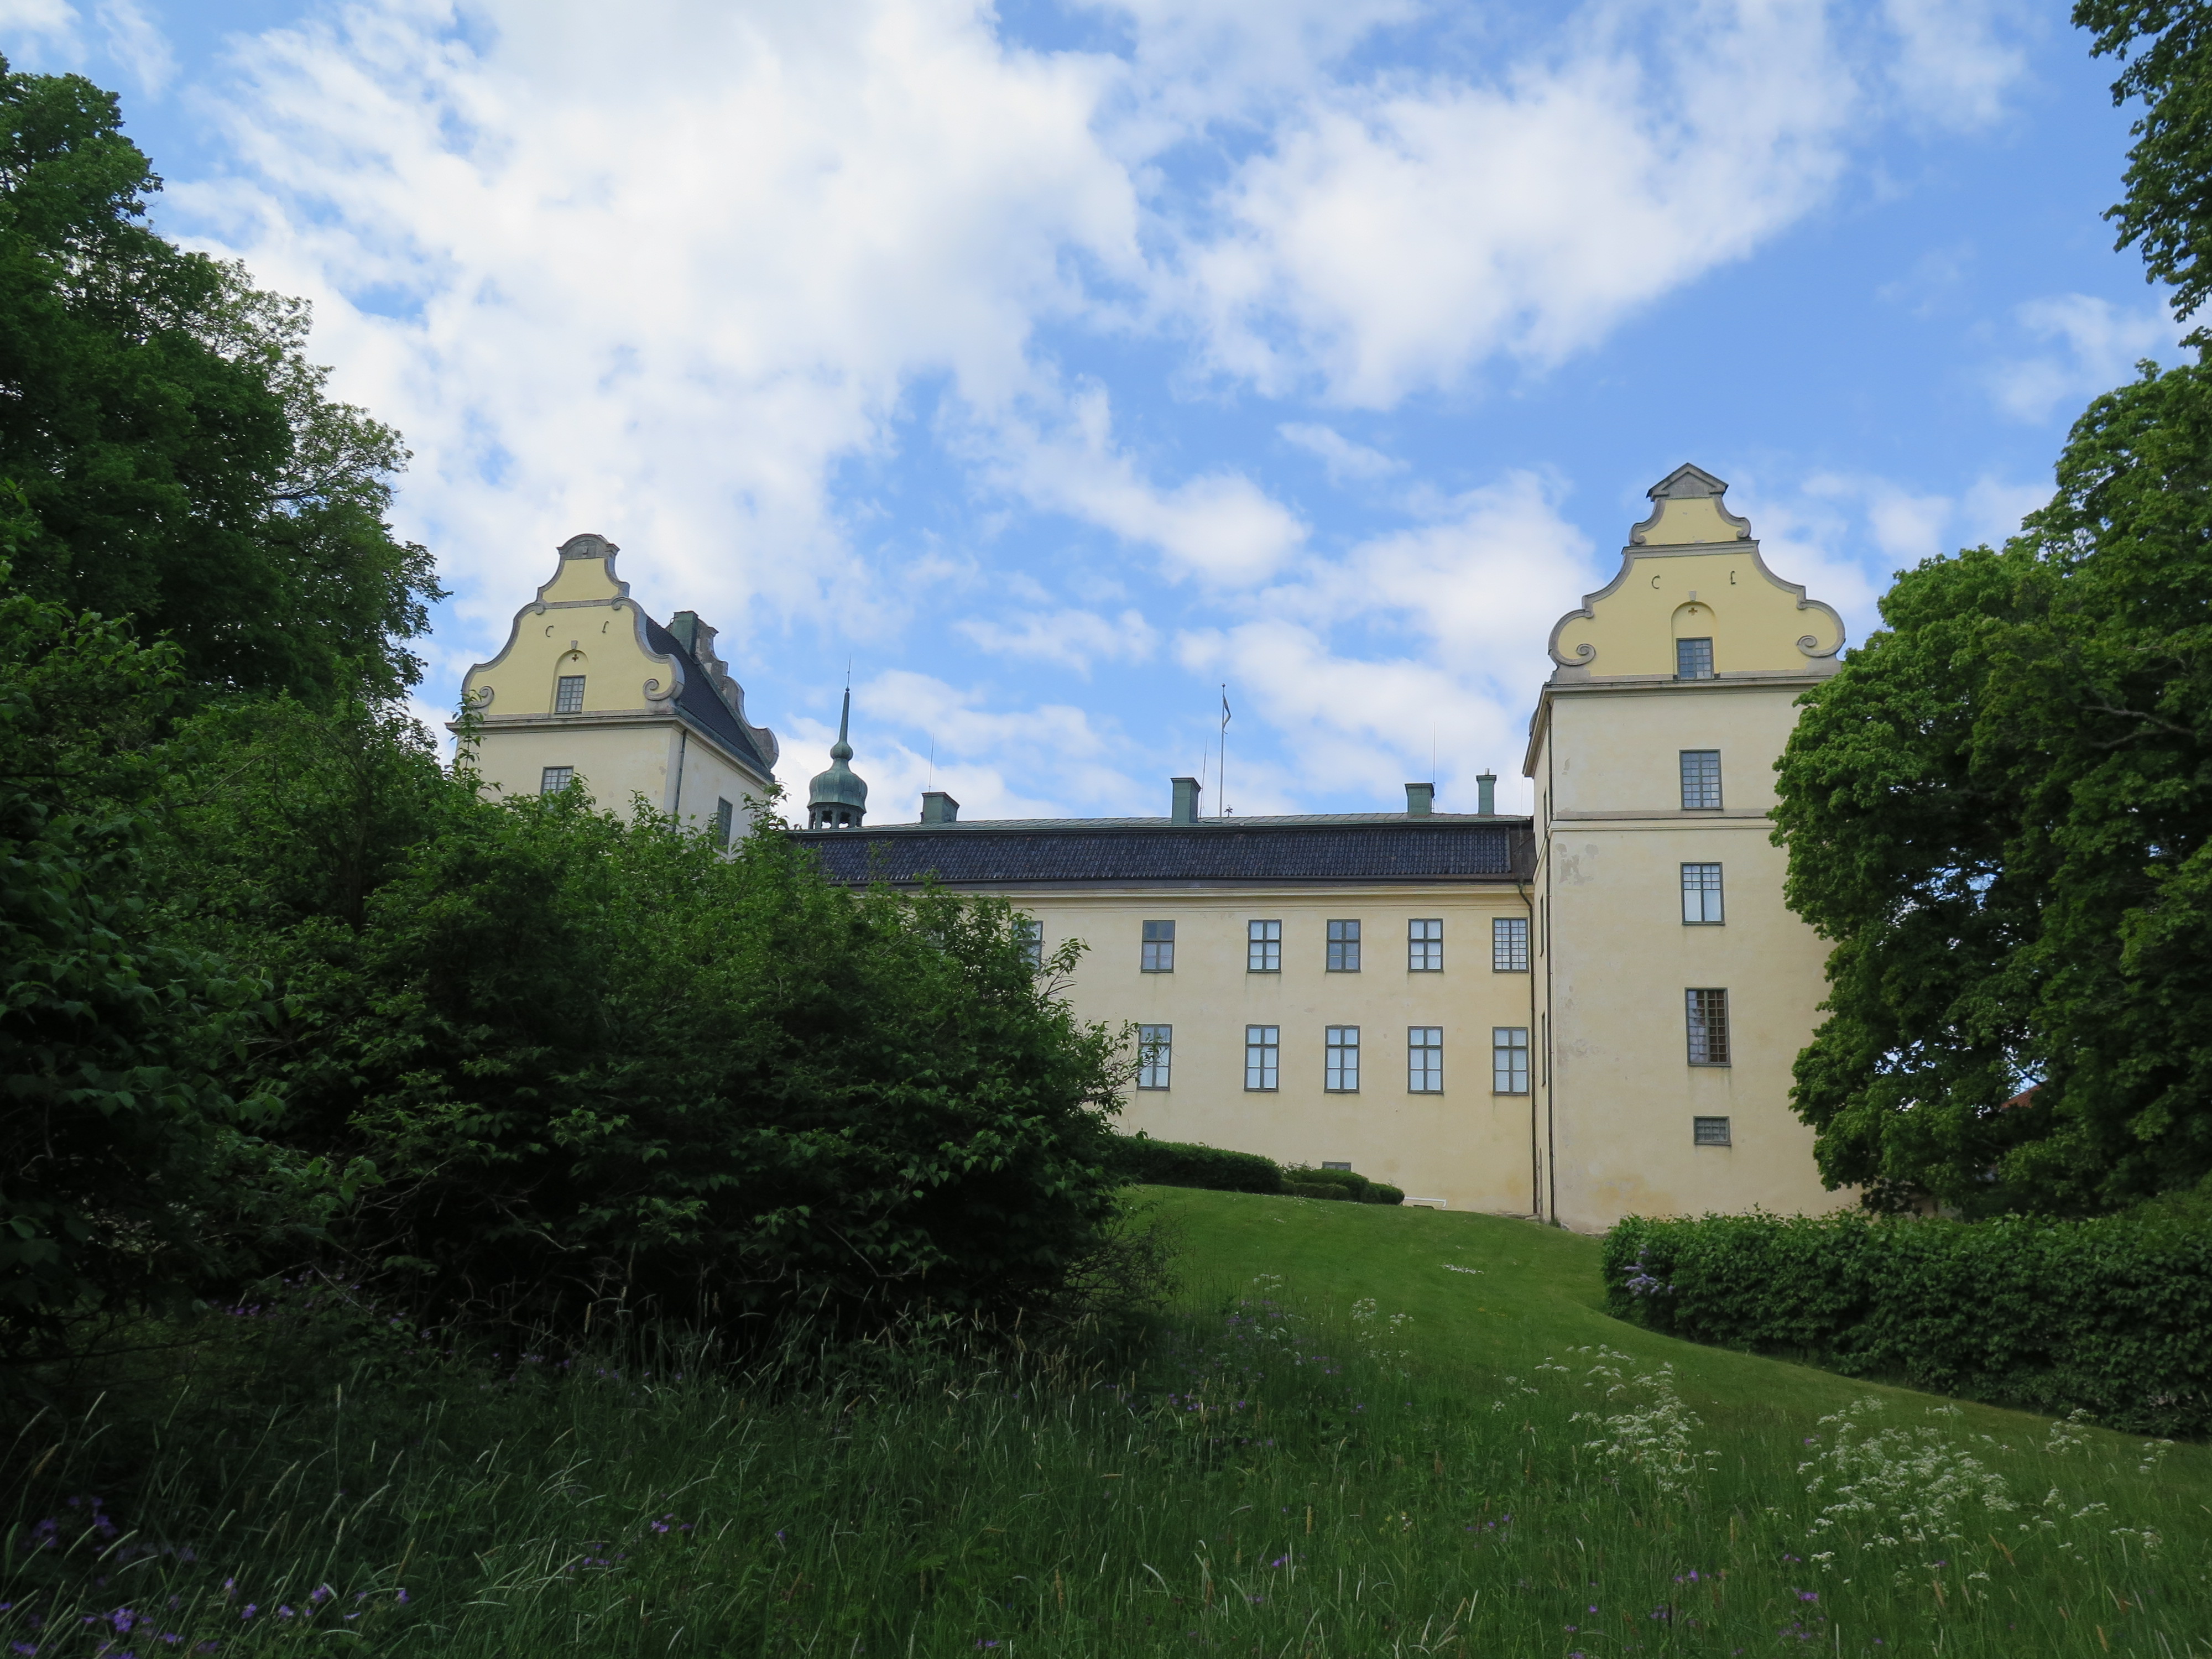 Tyresö slott frön sjösidan, gul fasad i lummig parkmiljö